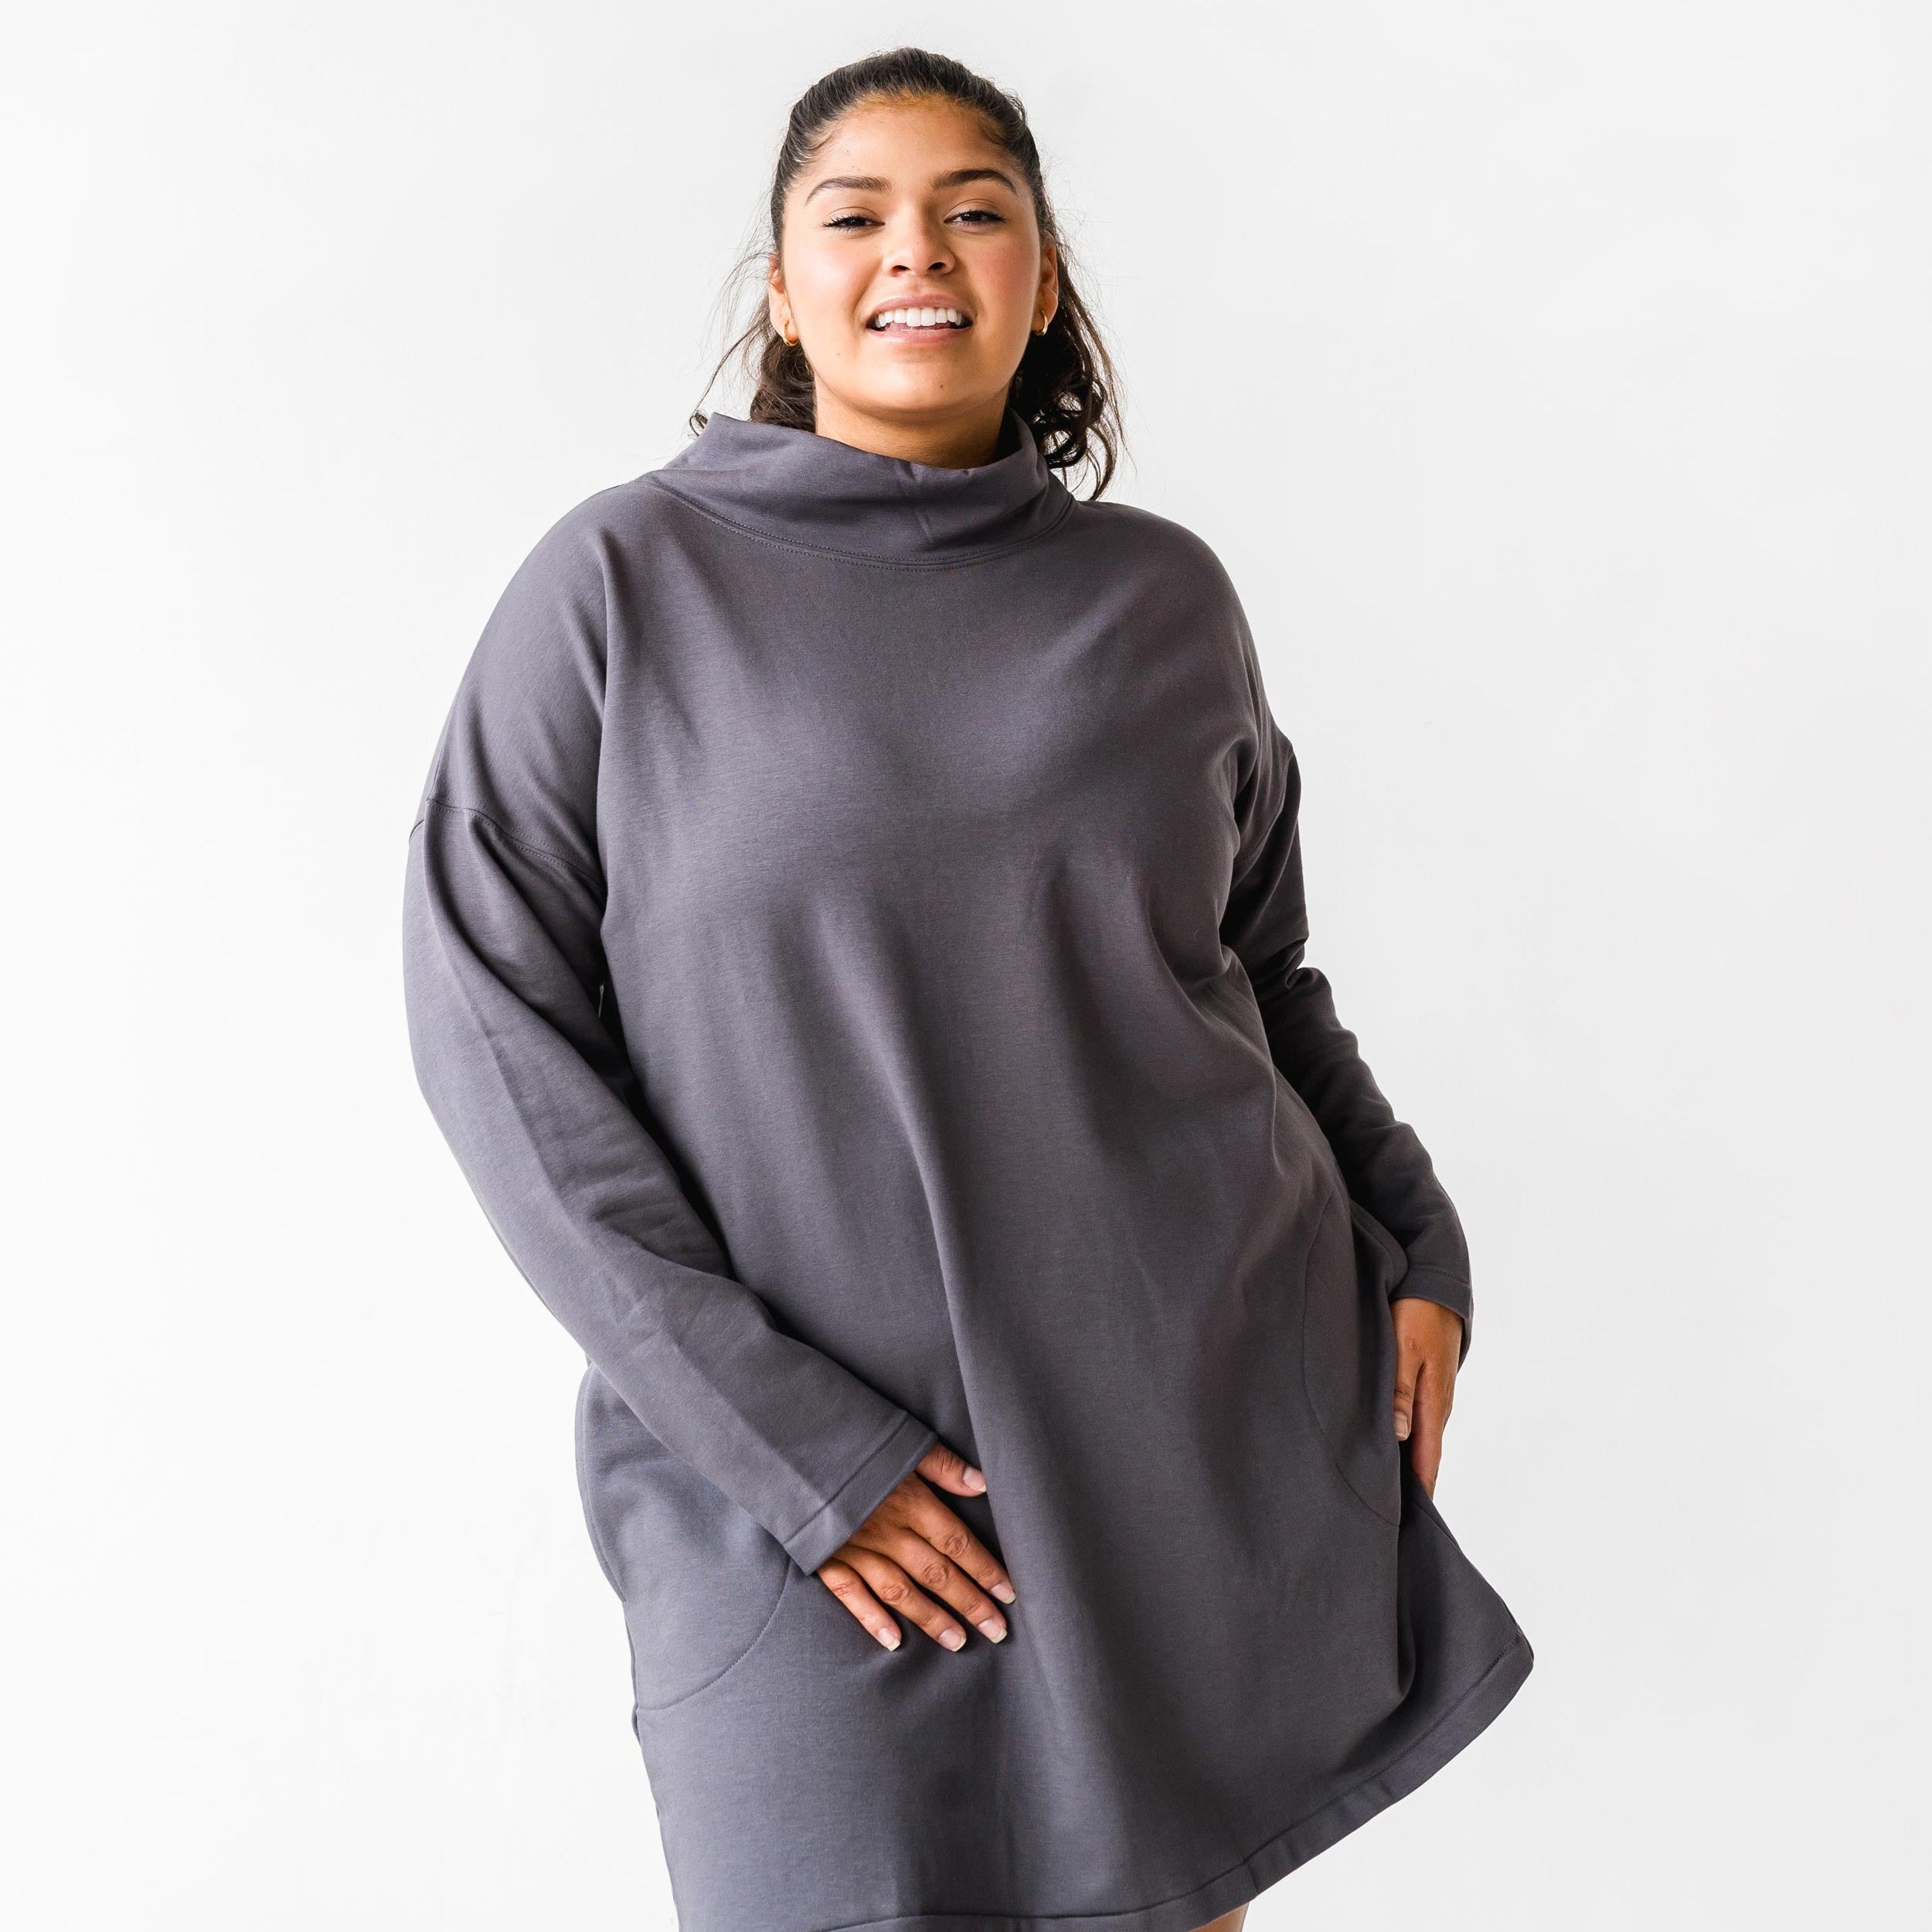 The Funnelneck Sweatshirt Dress | FRANC Sustainable Clothing